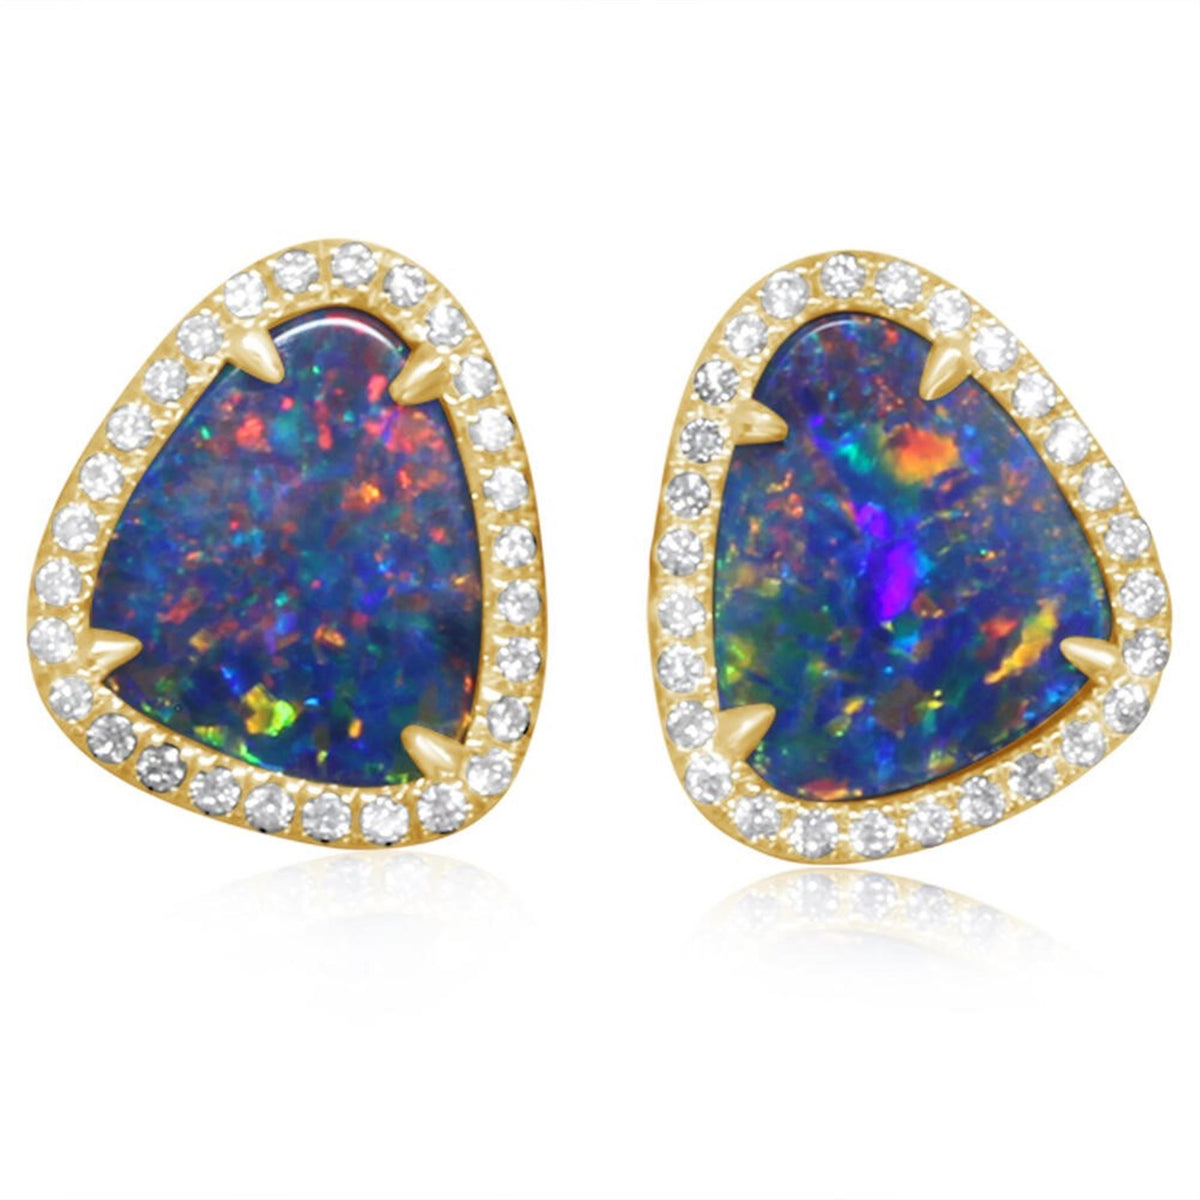 14Kt Yellow Gold Halo Earrings Gemstone Earrings With 3.97ct Australian Opals